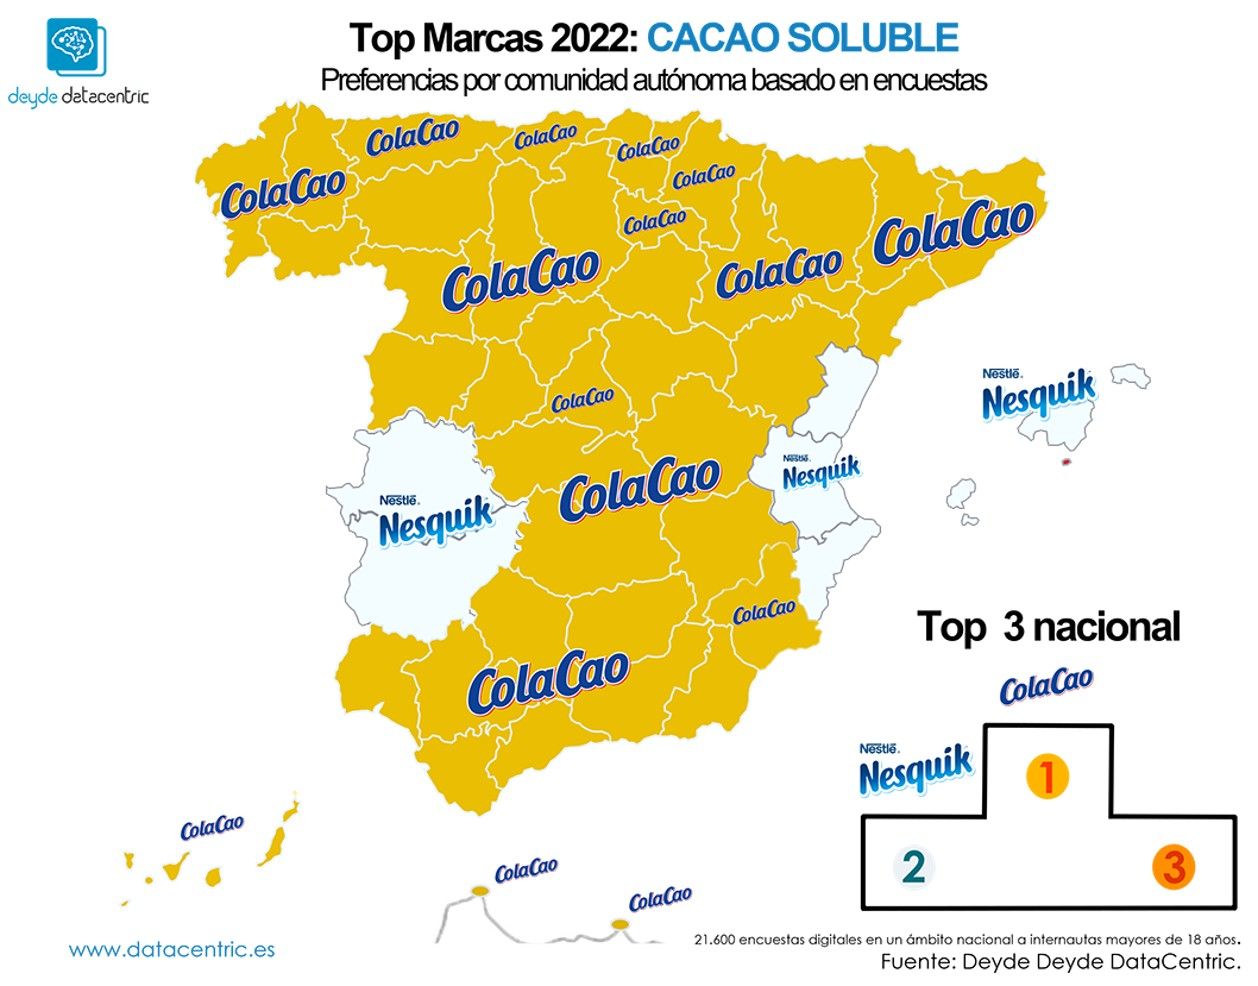 Las marcas de cacao soluble favoritas en España